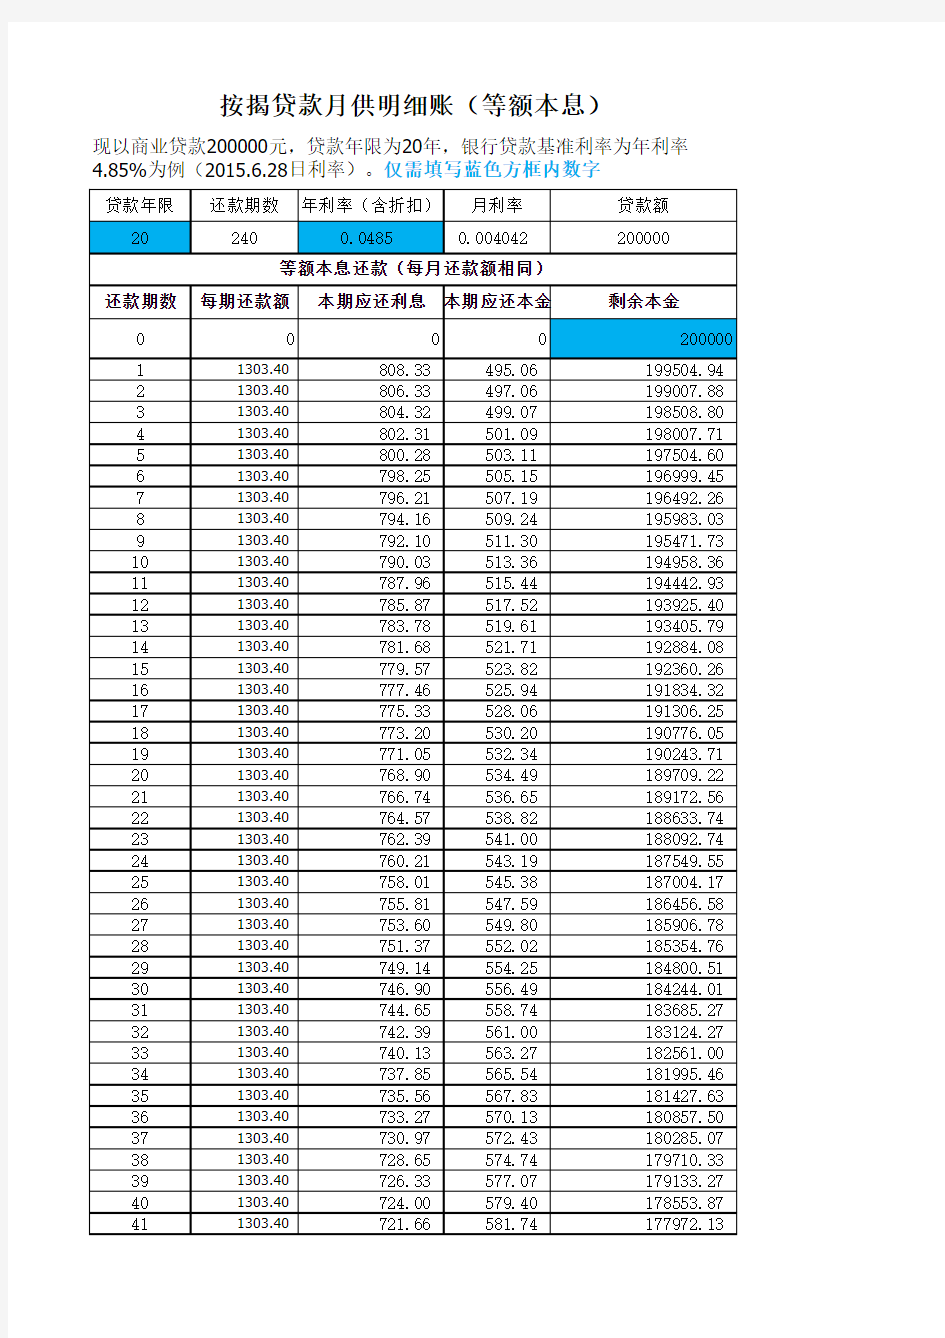 按揭贷款月供计算表2015.6.28